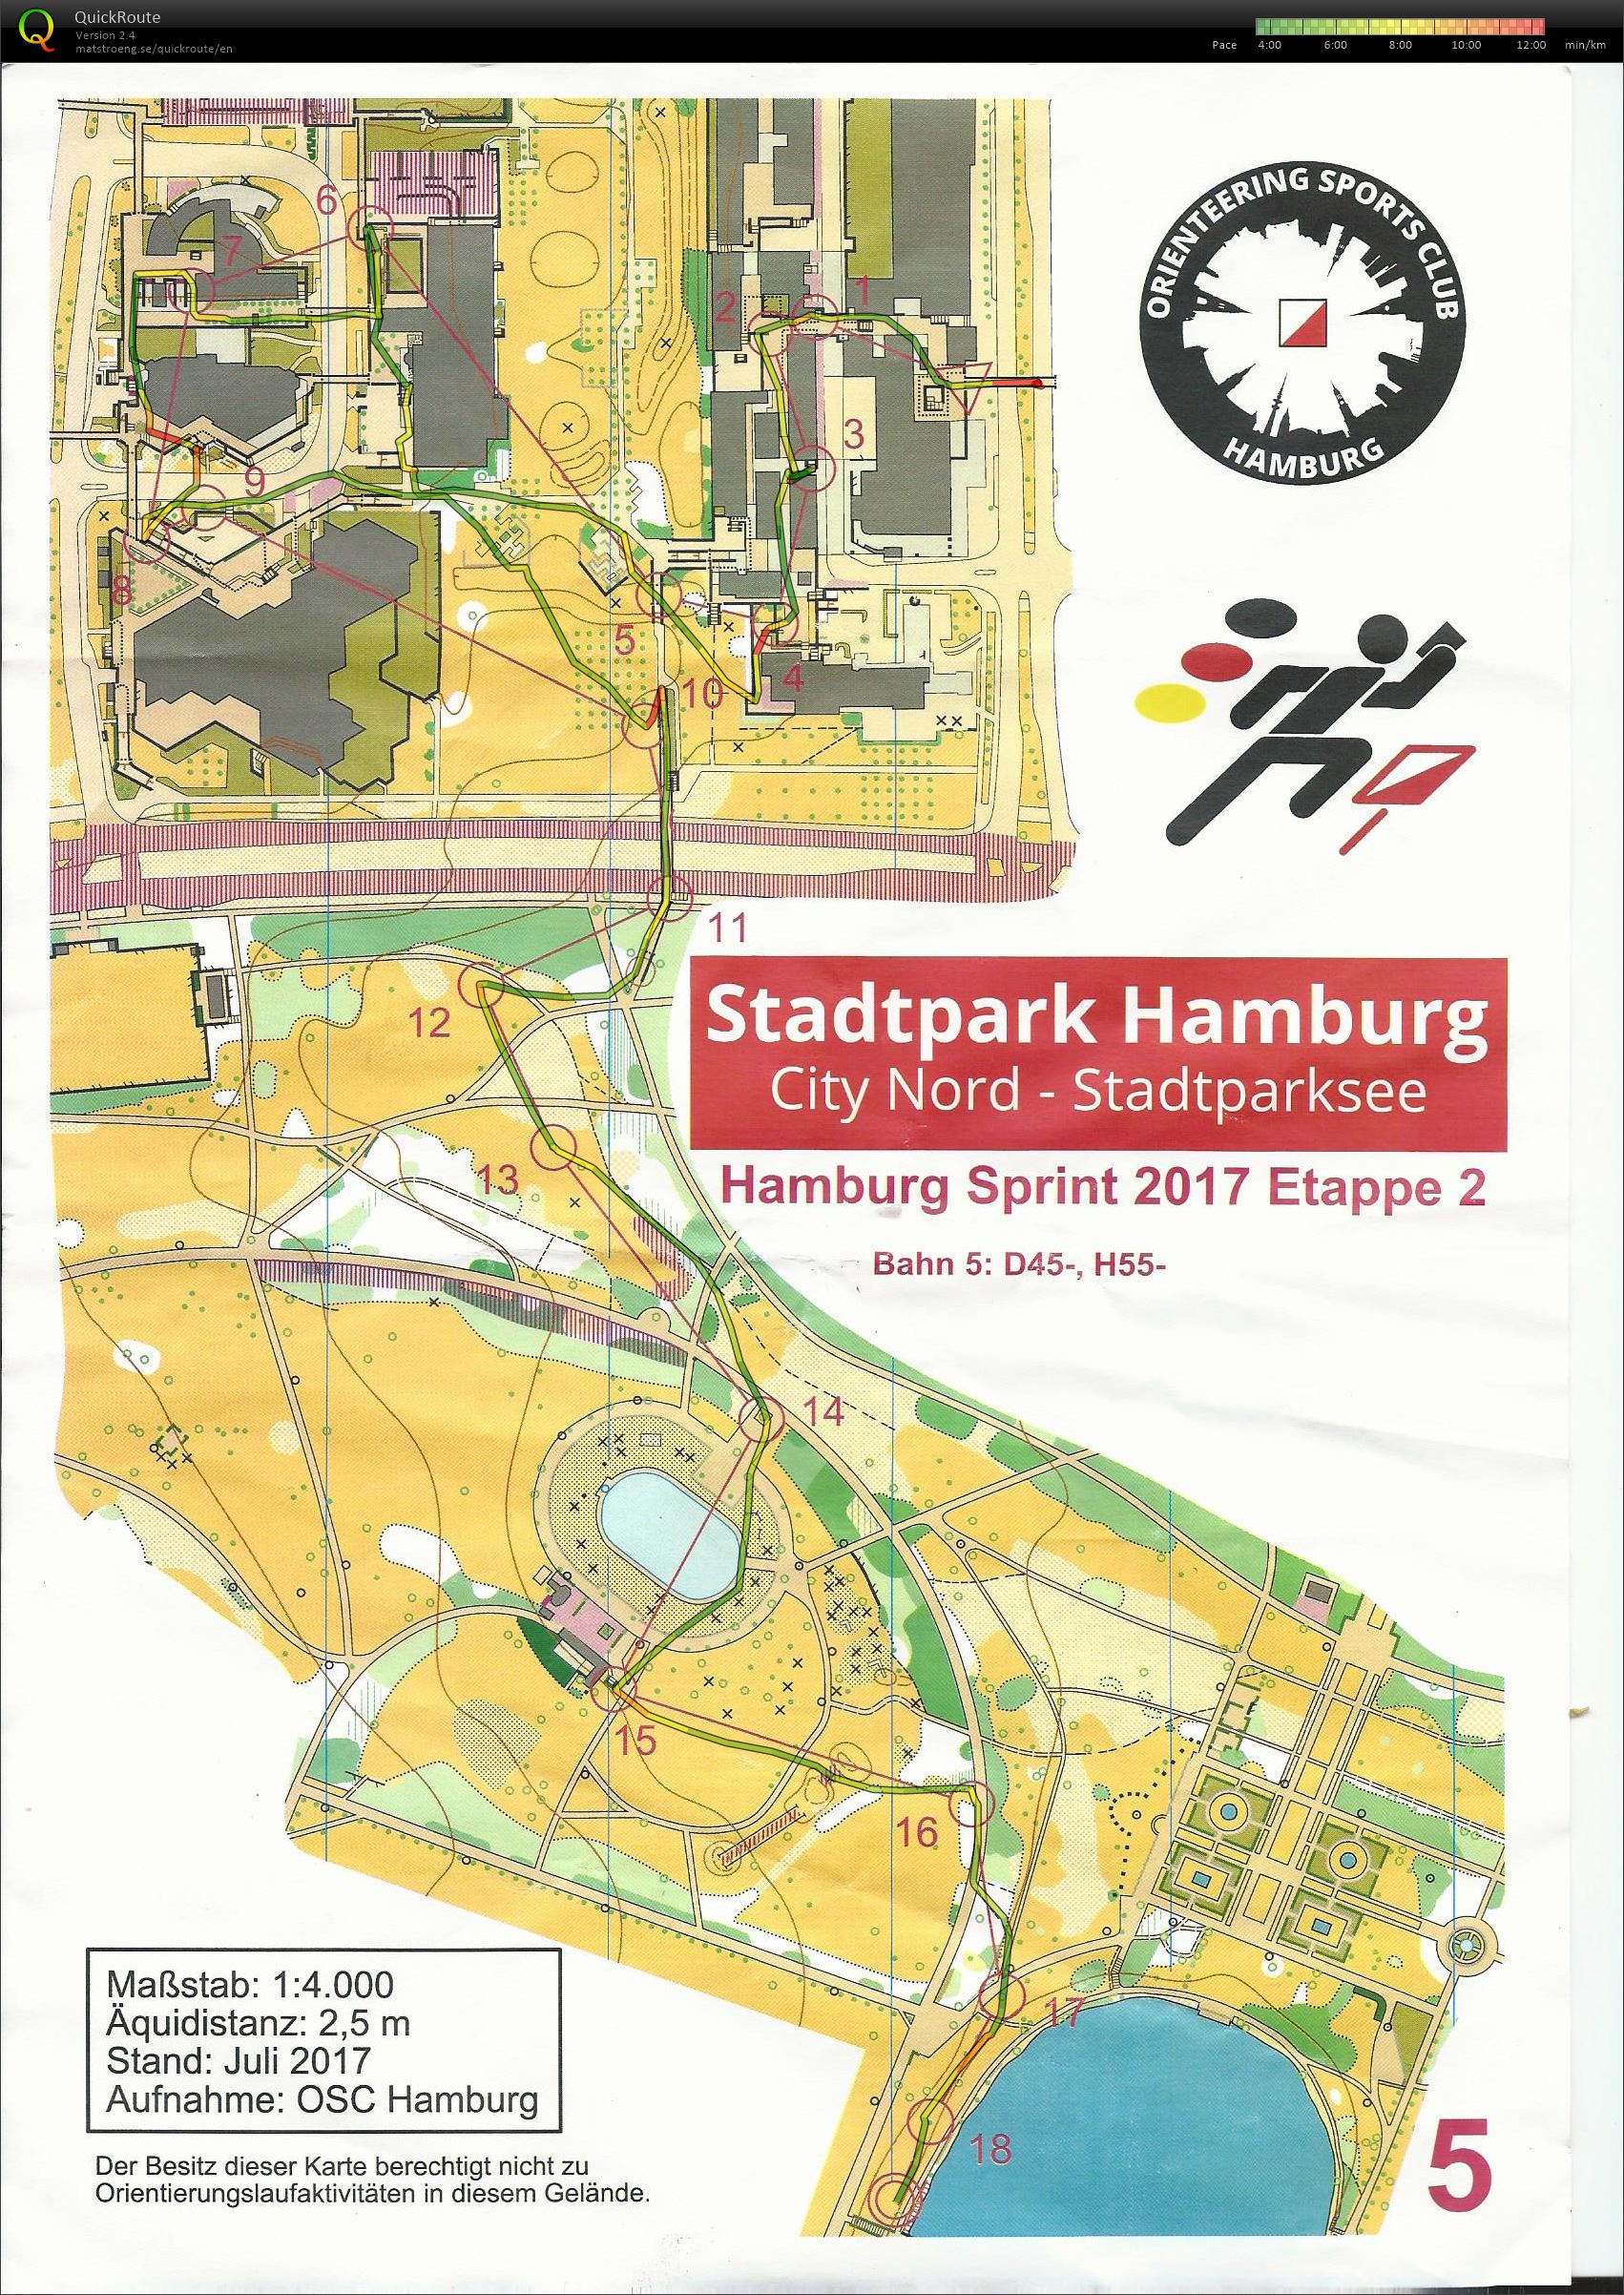 Hamburg sprint 2017 etape 2 (12/08/2017)